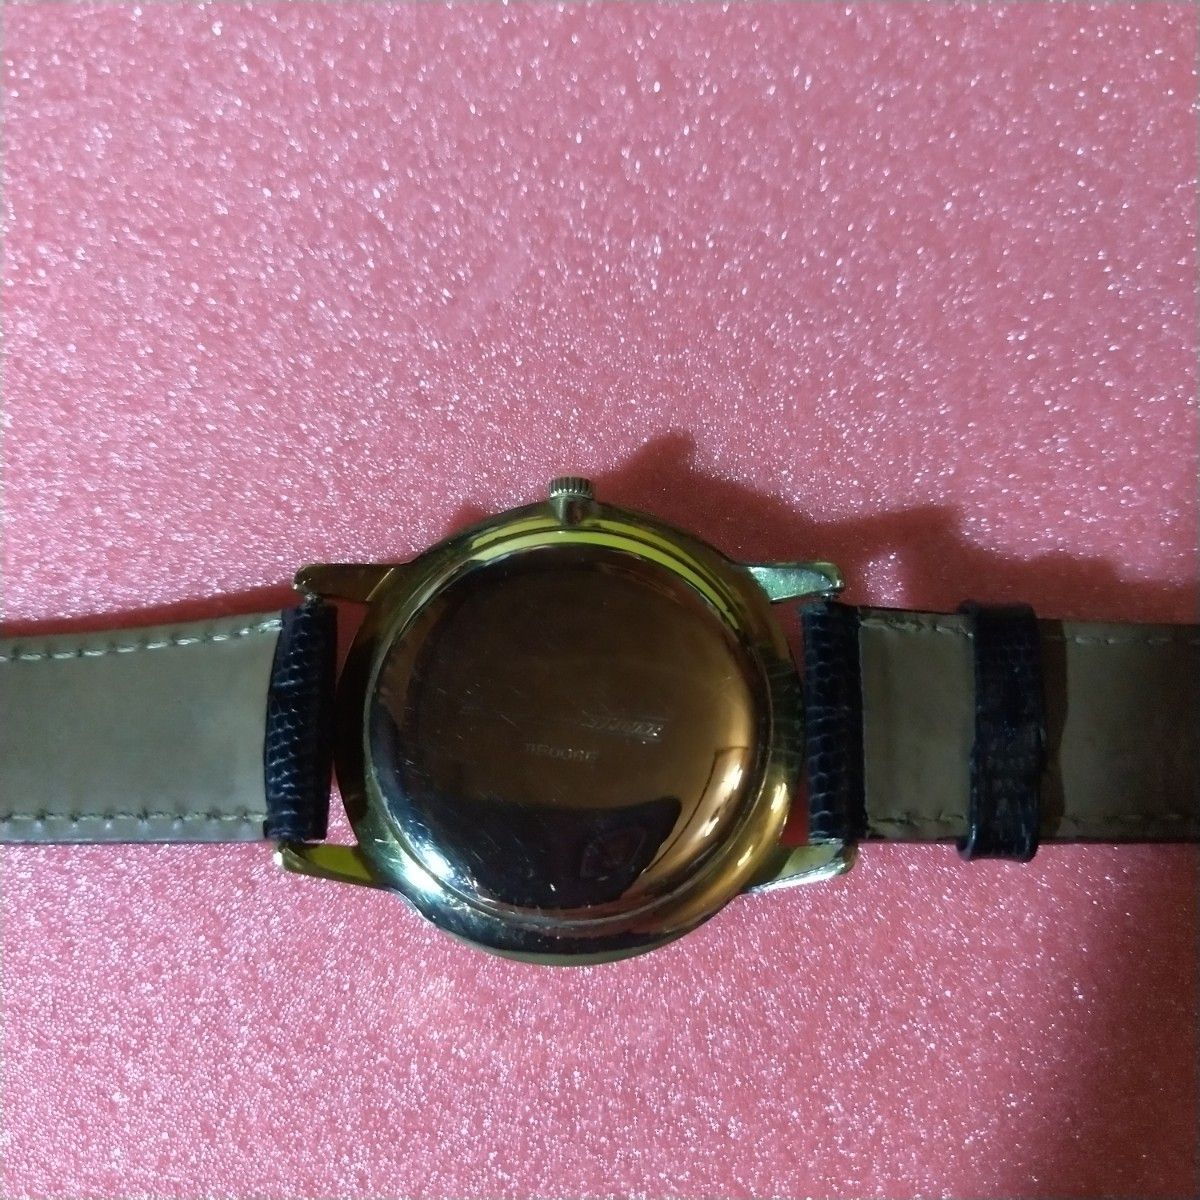 セイコースカイライナー21石手巻き腕時計